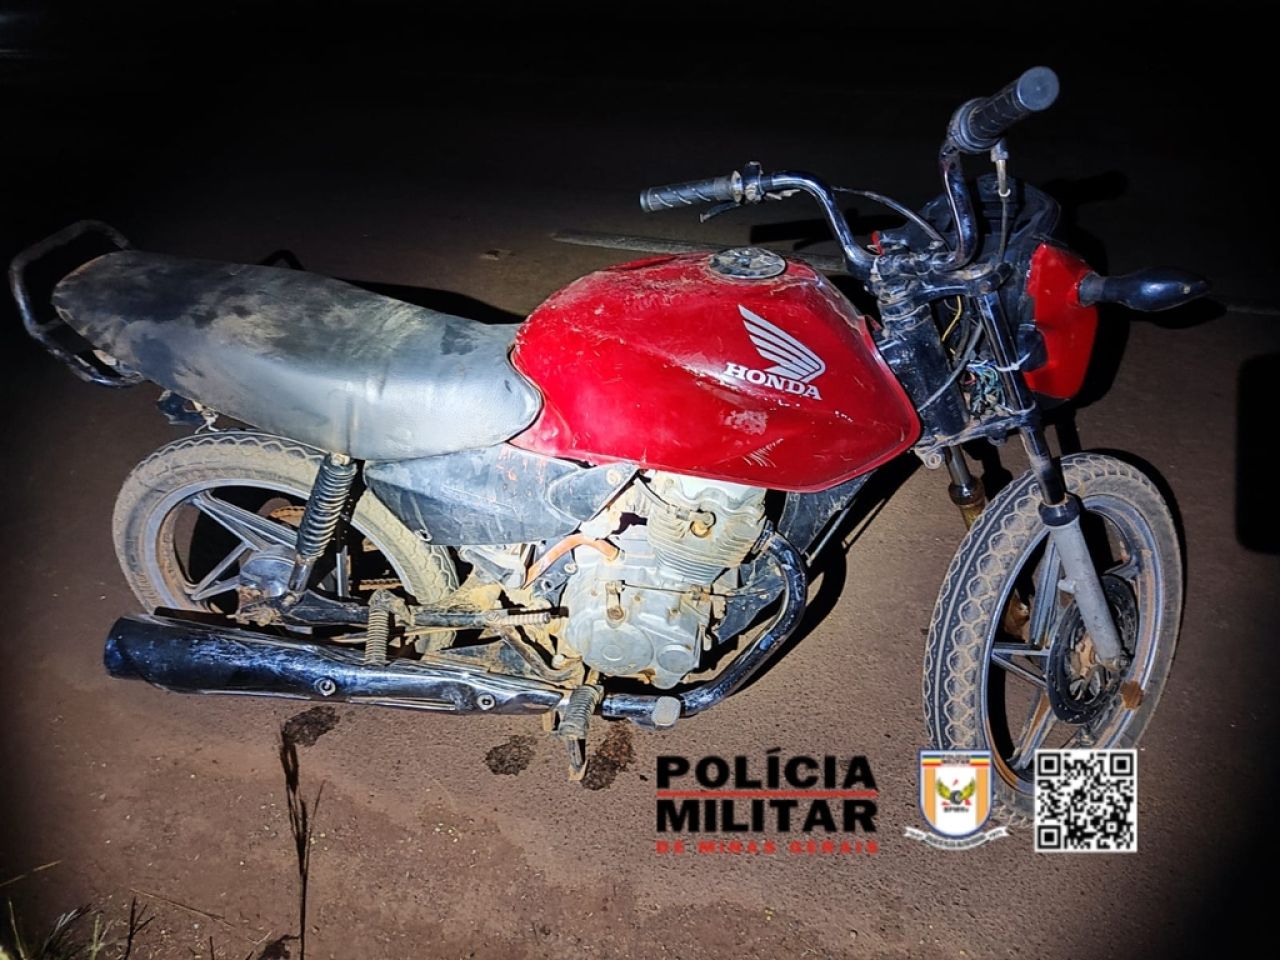 PM Rodoviária apreende motocicleta sem placa e com chassi raspado na rodovia MG-188